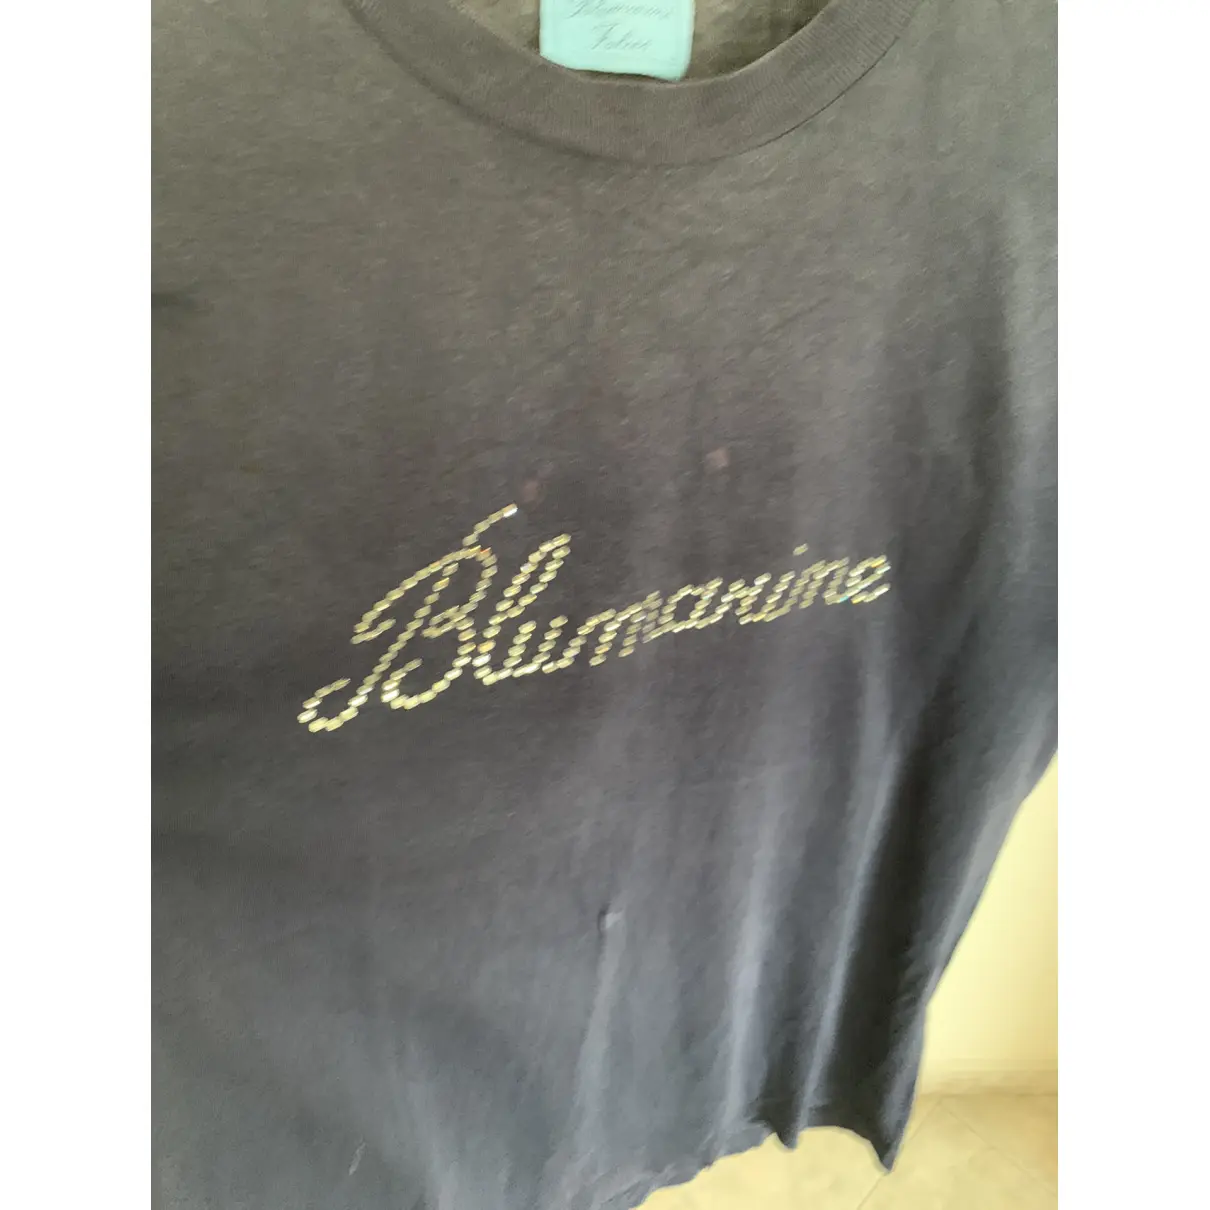 T-shirt Blumarine